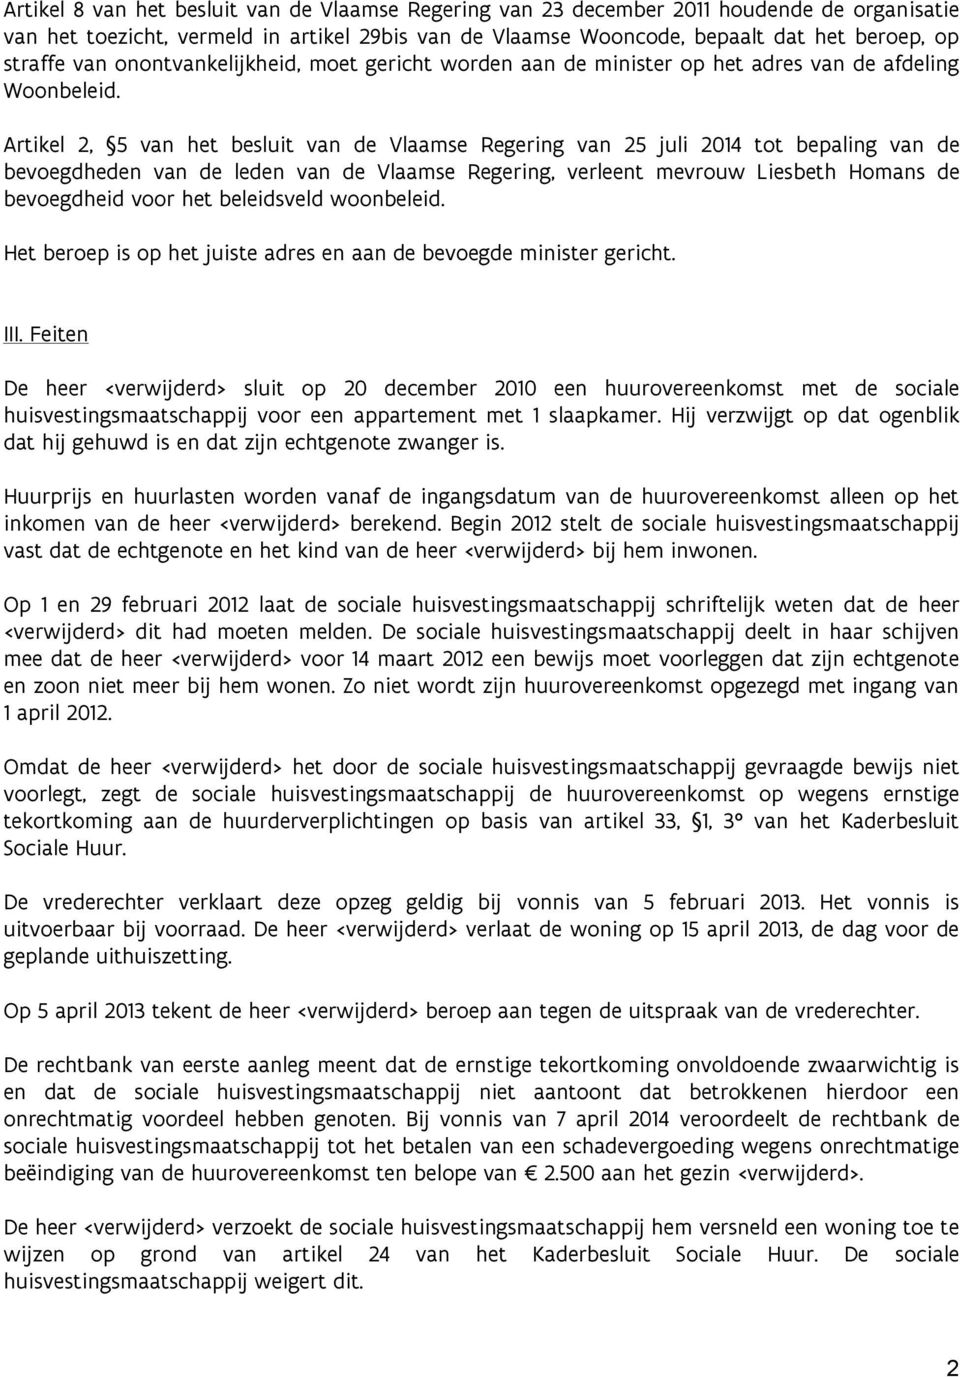 Artikel 2, 5 van het besluit van de Vlaamse Regering van 25 juli 2014 tot bepaling van de bevoegdheden van de leden van de Vlaamse Regering, verleent mevrouw Liesbeth Homans de bevoegdheid voor het